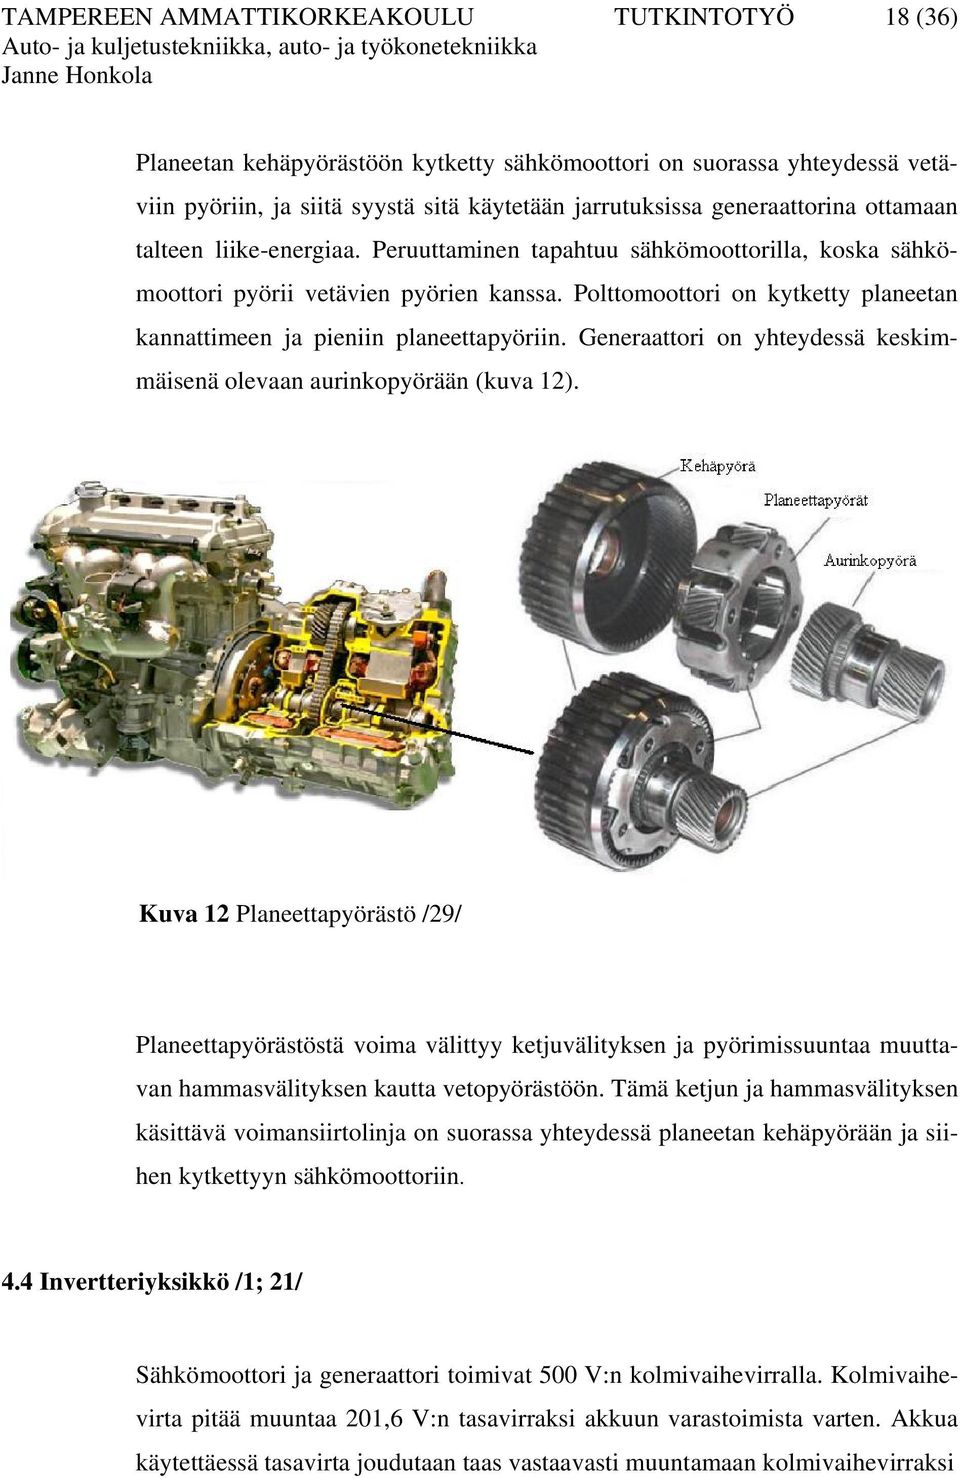 Polttomoottori on kytketty planeetan kannattimeen ja pieniin planeettapyöriin. Generaattori on yhteydessä keskimmäisenä olevaan aurinkopyörään (kuva 12).